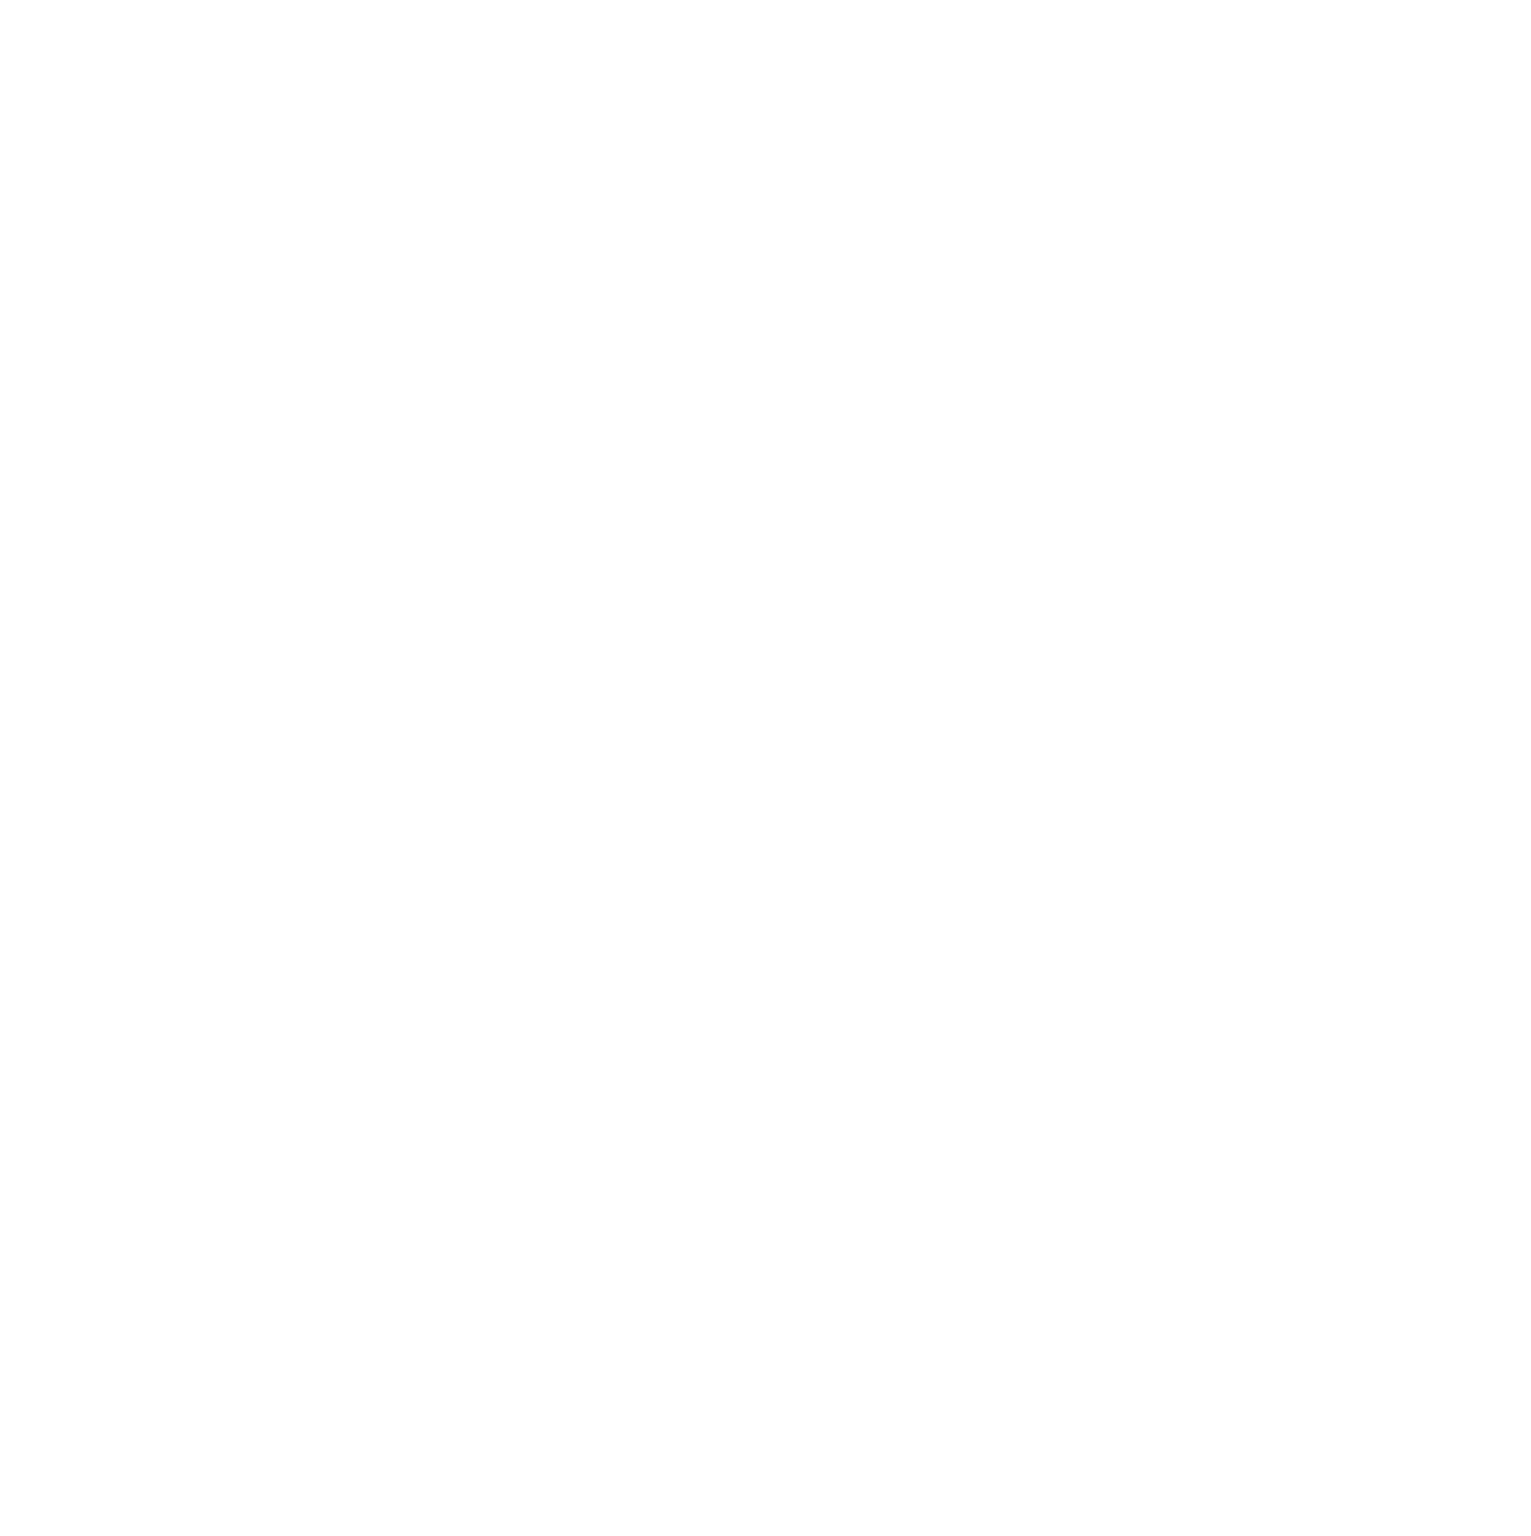 UniFirst logo for dark backgrounds (transparent PNG)